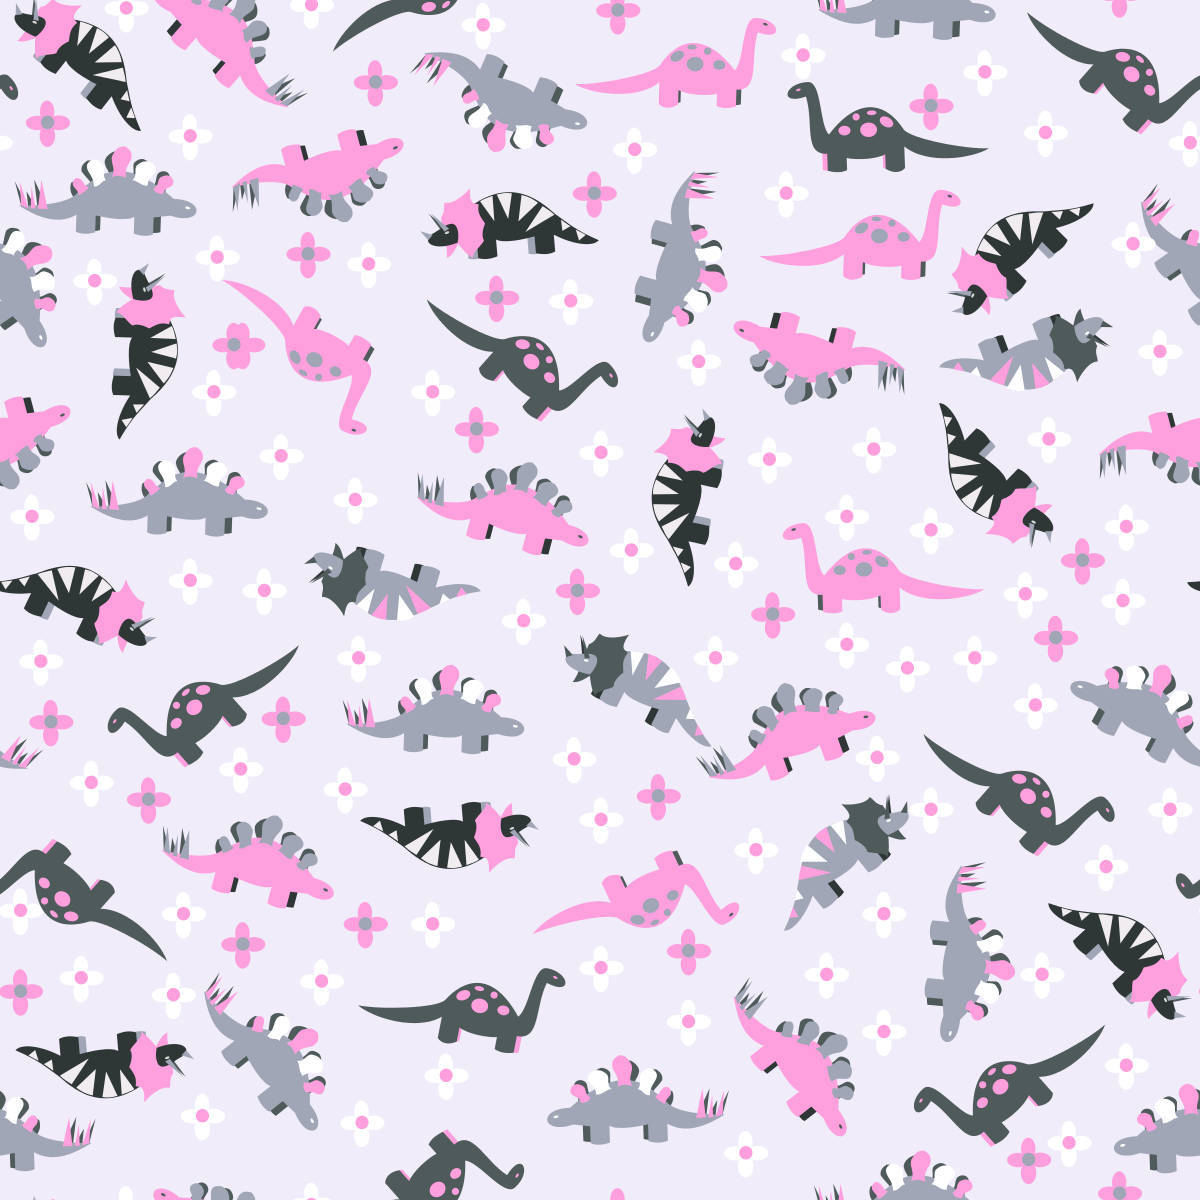 Unpatrón Intrincado Y Engañosamente Lindo De Dinosaurios En Un Fondo Rosa Pastel. Fondo de pantalla